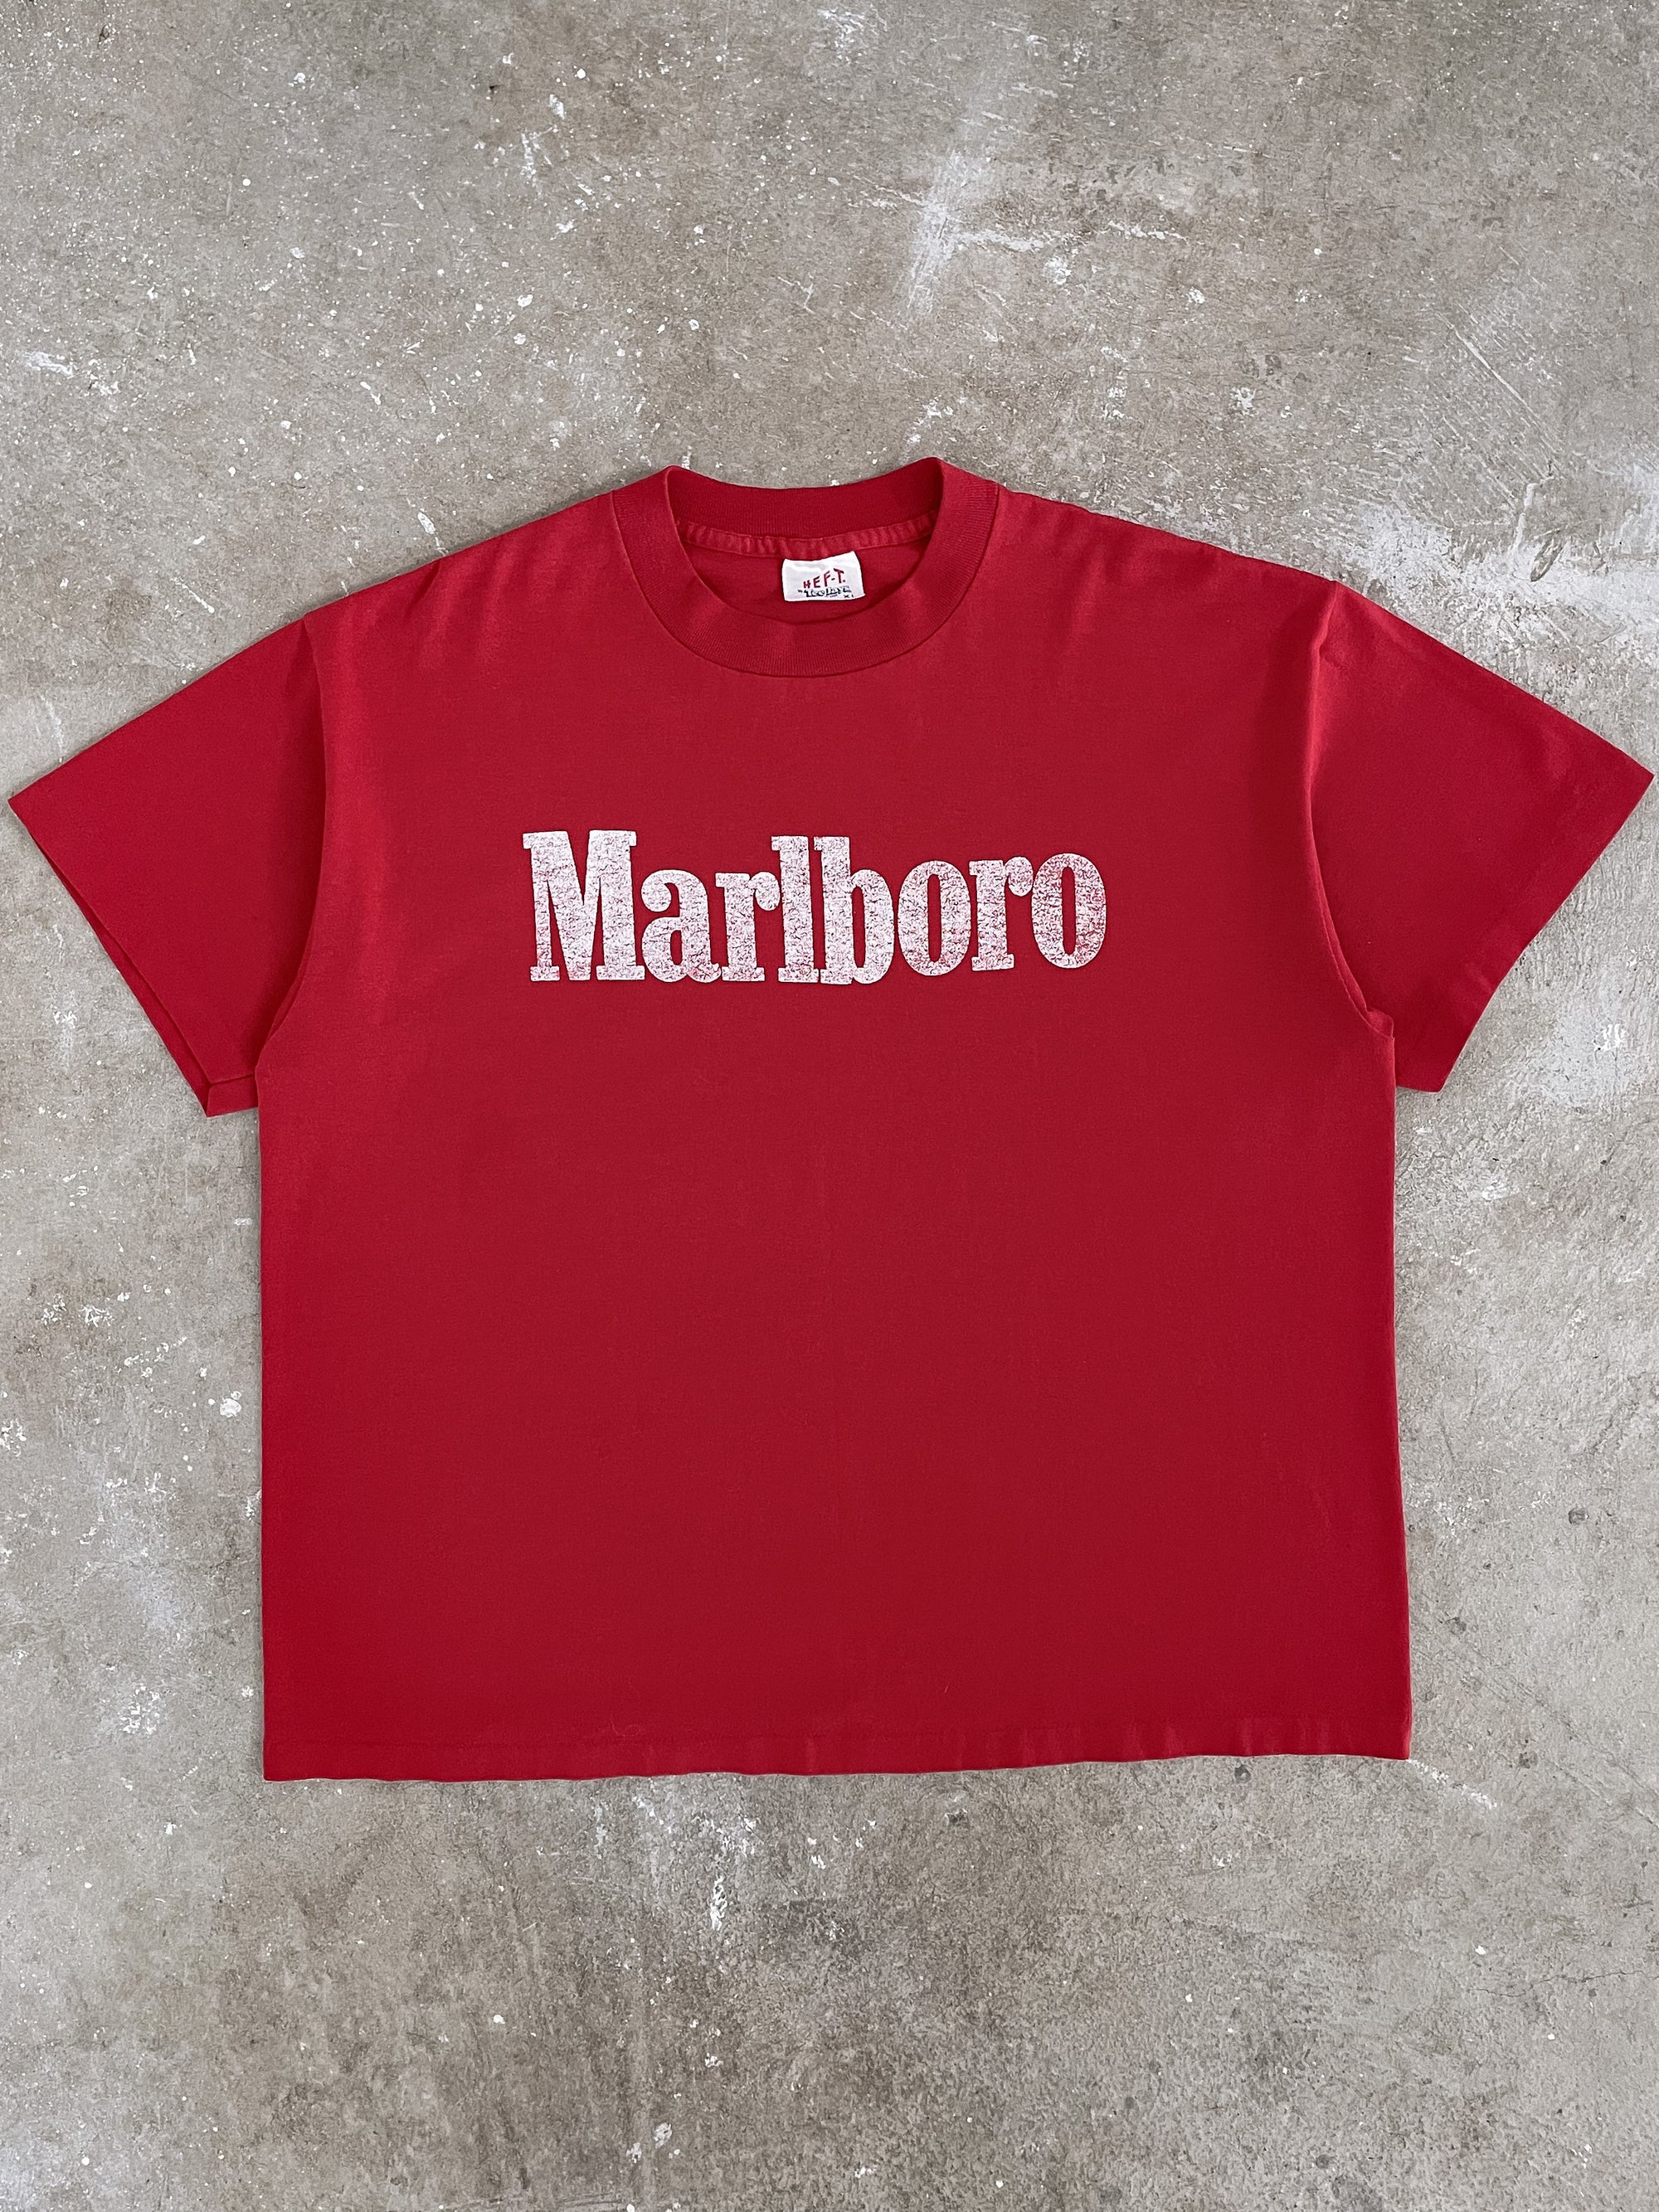 1980s “Marlboro” Single Stitched Tee (L/XL)